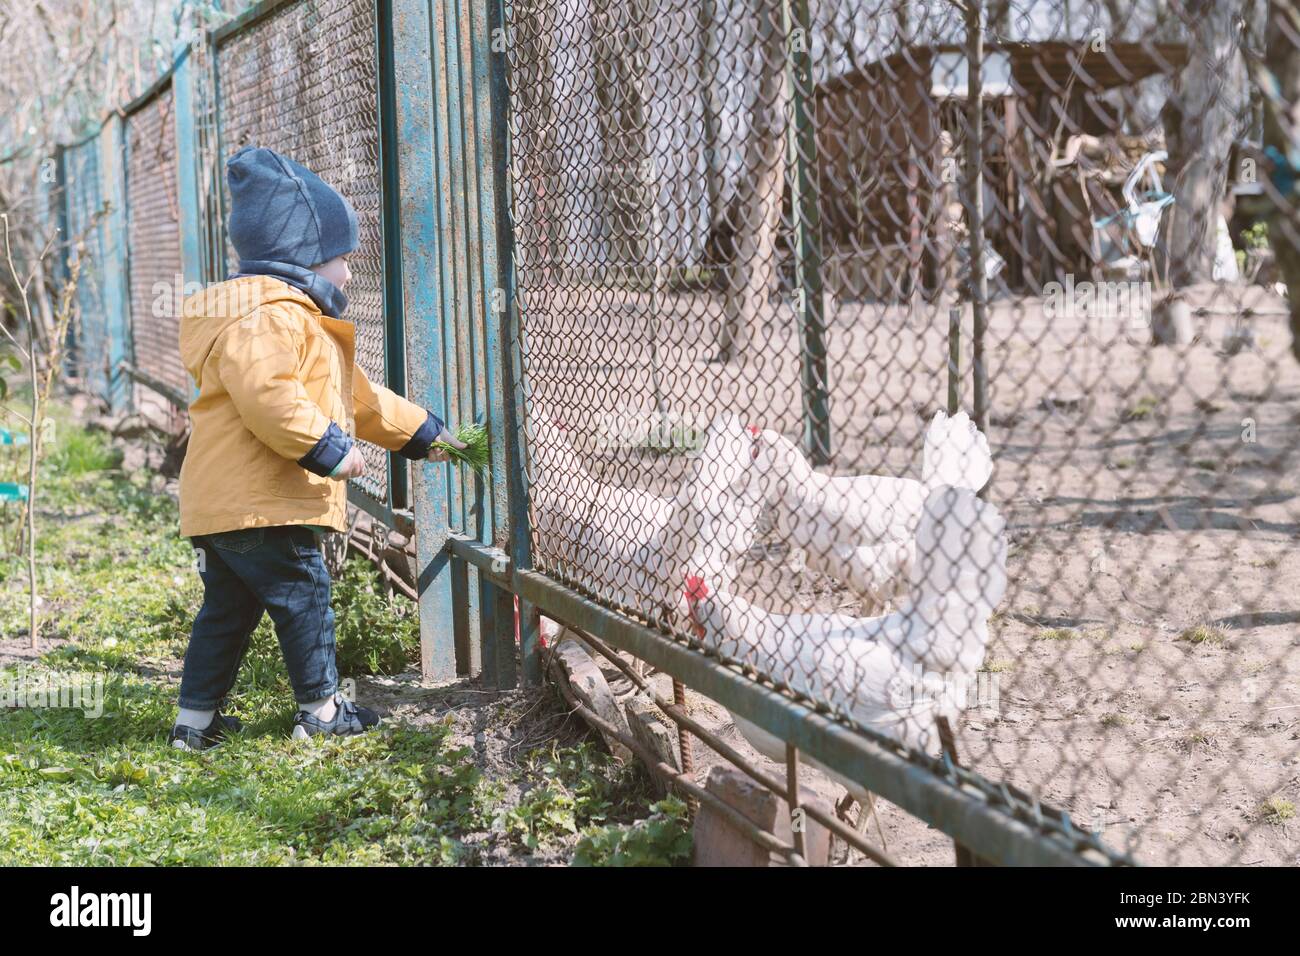 Der kleine Junge füttert die Hühner durch das Gitter im Frühlingsgarten Stockfoto